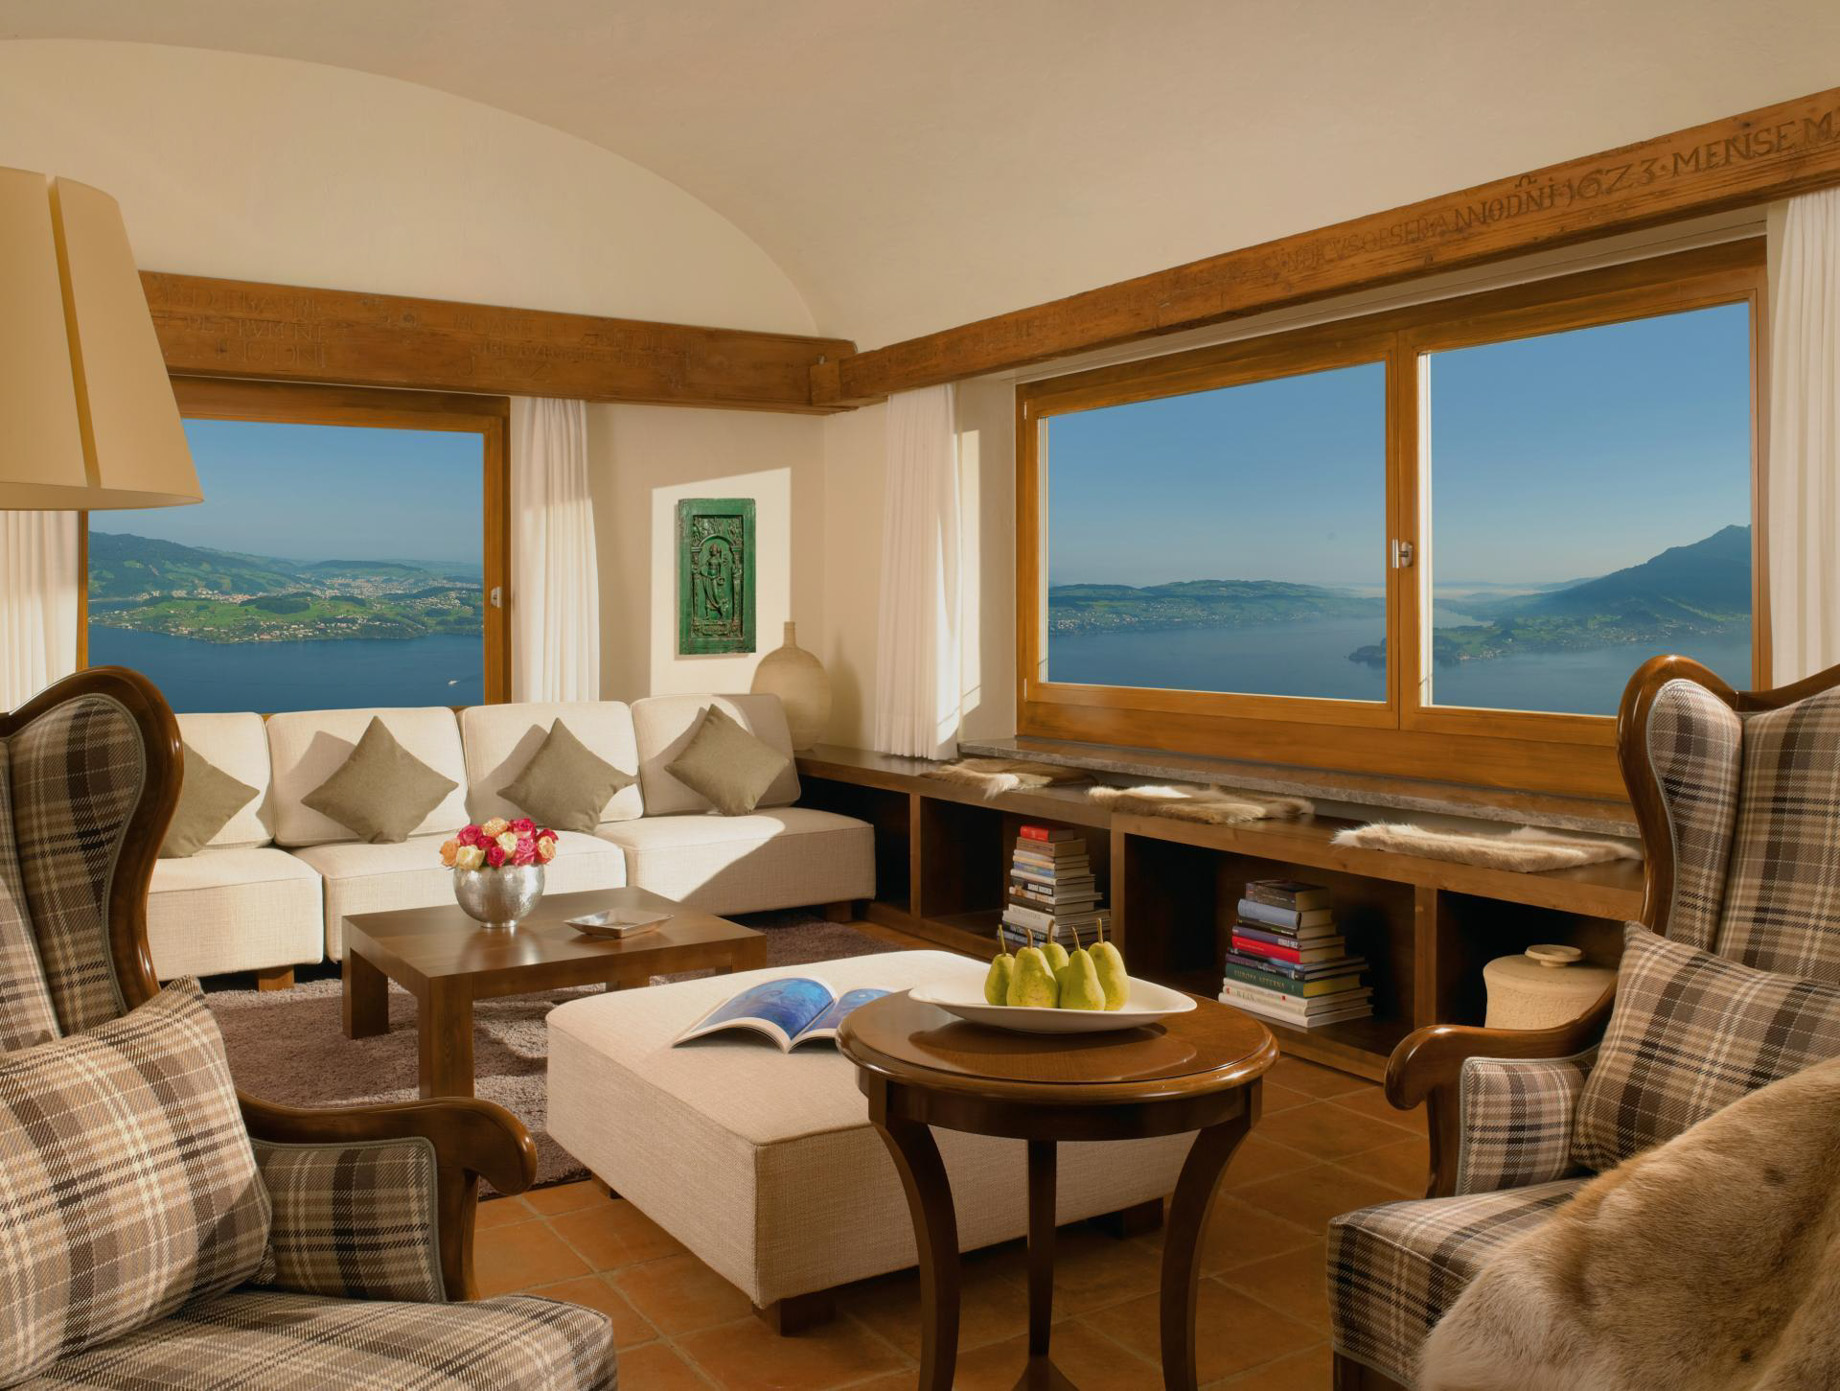 Palace Hotel – Burgenstock Hotels & Resort – Obburgen, Switzerland – Blockhaus Residence Living Room